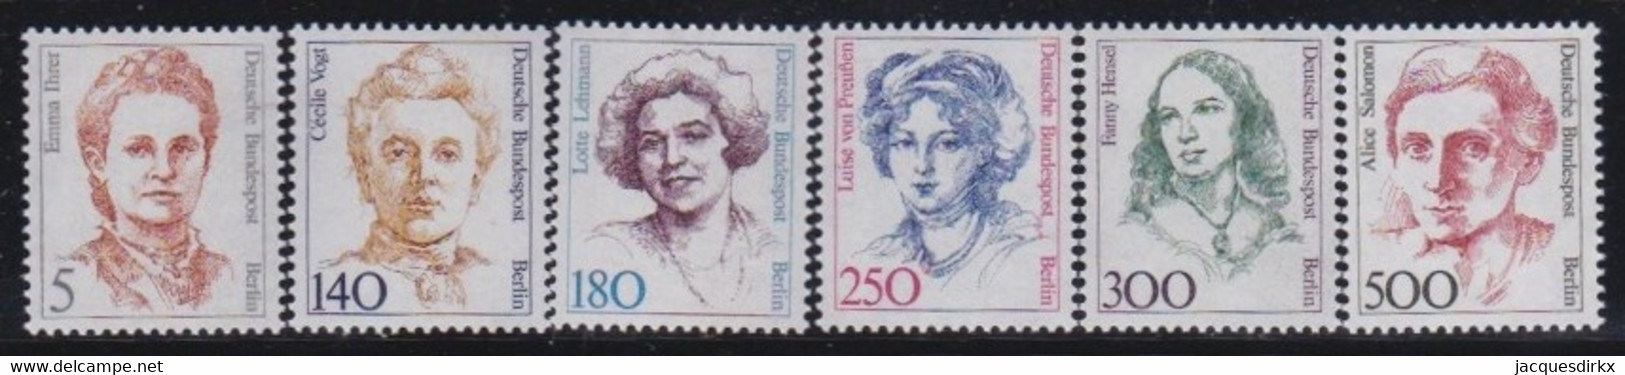 Berlin   .    Michel   6 Marken        .      **   .   Postfrisch - Unused Stamps